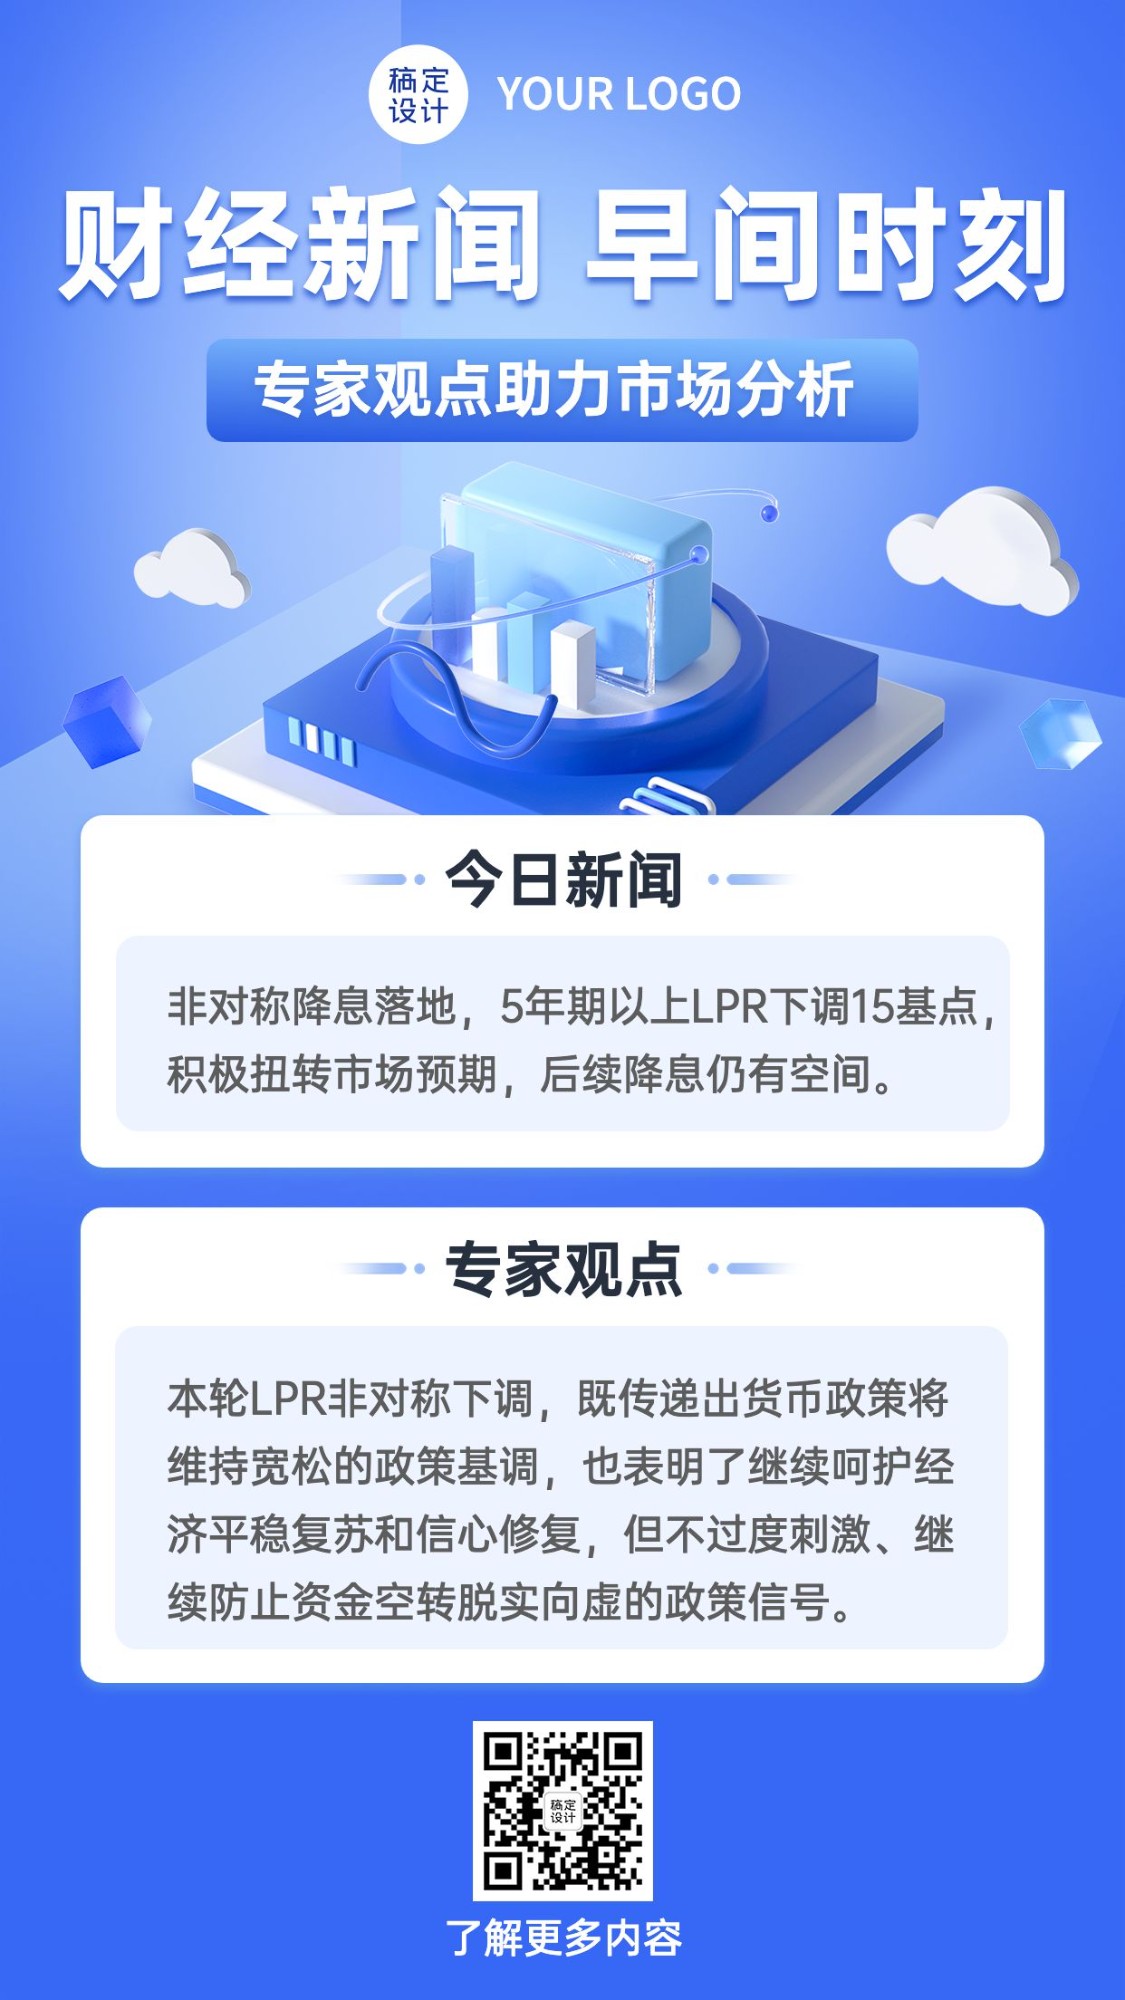 金融财经新闻行情资讯2.5D手机海报